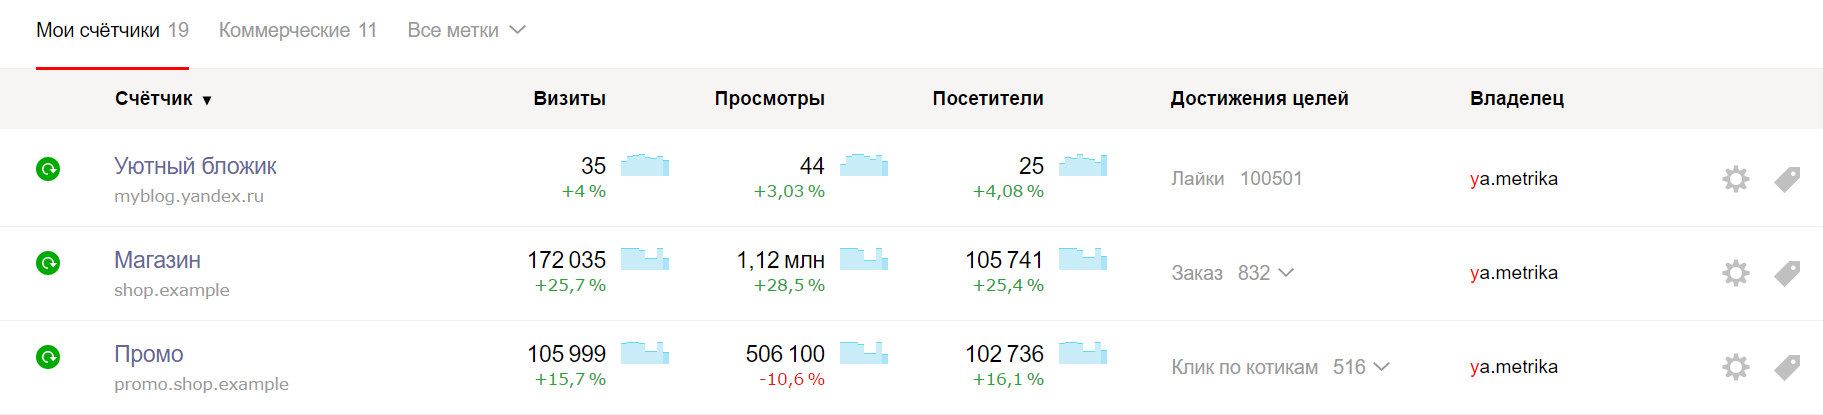 Яндекс.Метрика обновила список счетчиков на первой странице